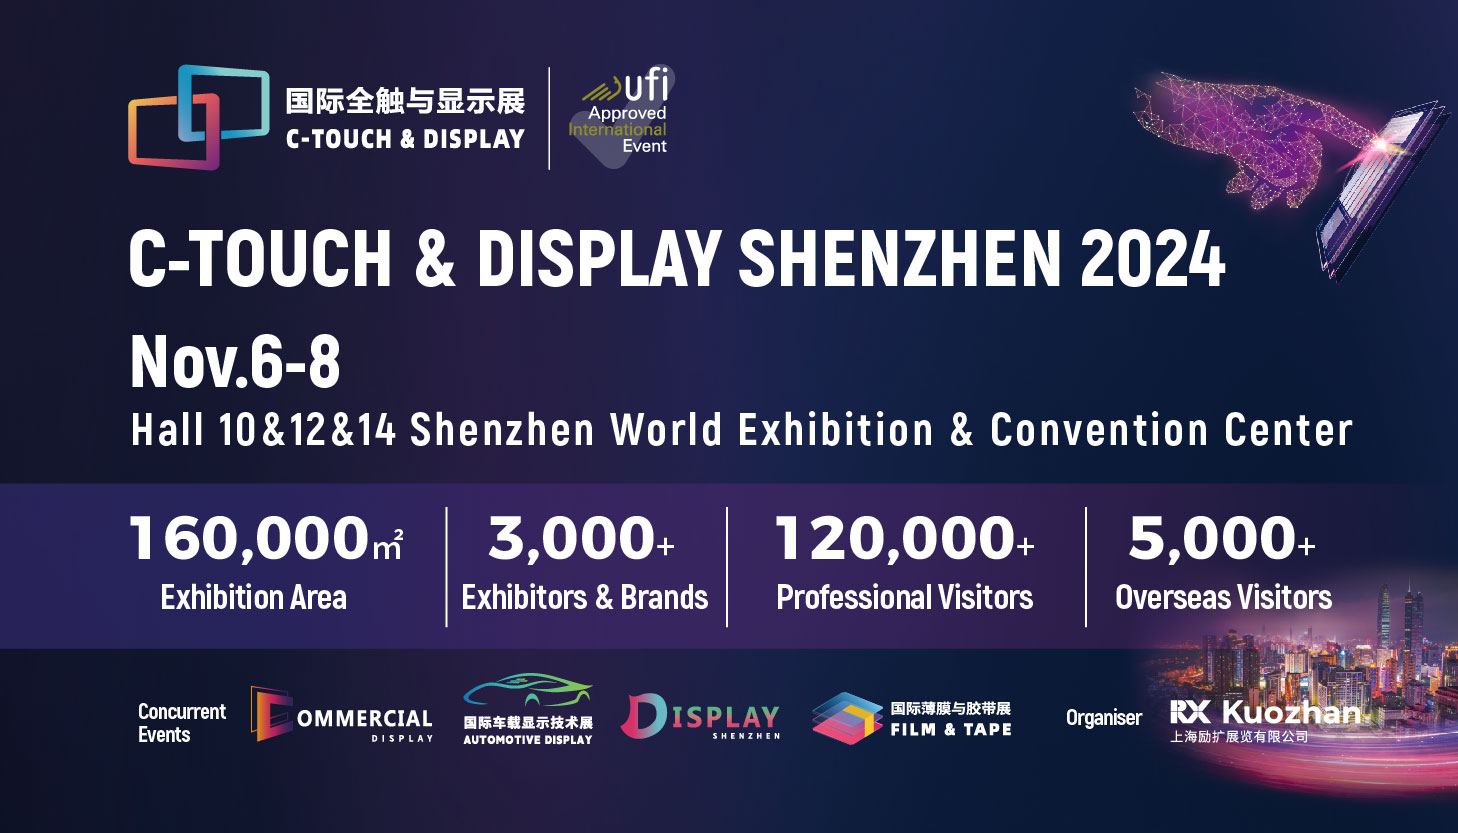 C-Touch & Display Shenzhen 2024, Shenzhen, Guangdong, China